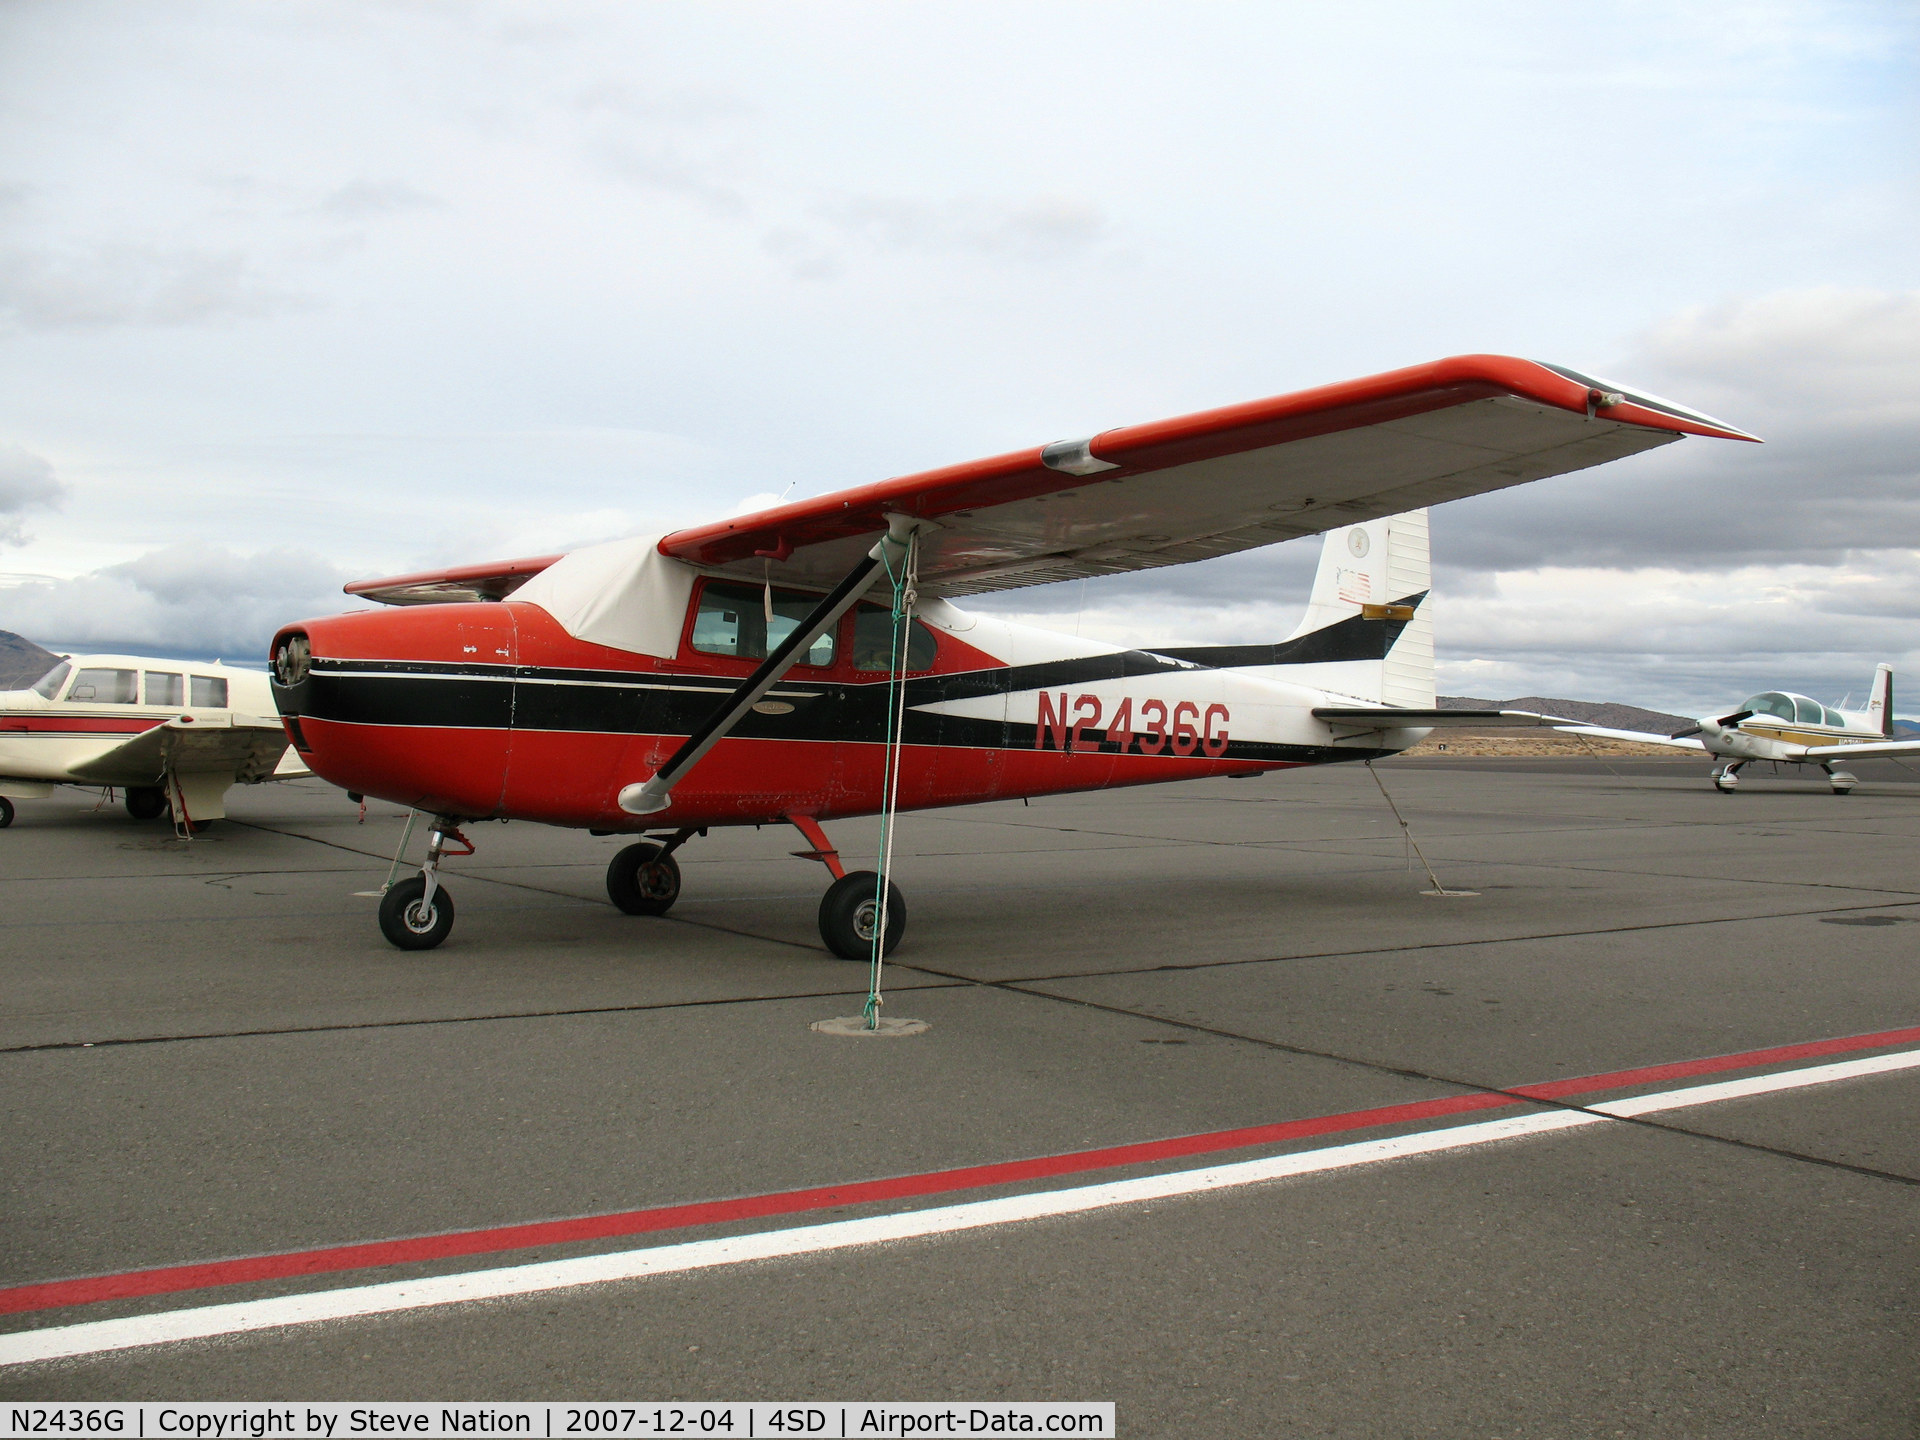 N2436G, 1959 Cessna 182B Skylane C/N 51736, ex-CAP 1959 straight-tail Cessna 182B (no prop) @ Reno-Stead